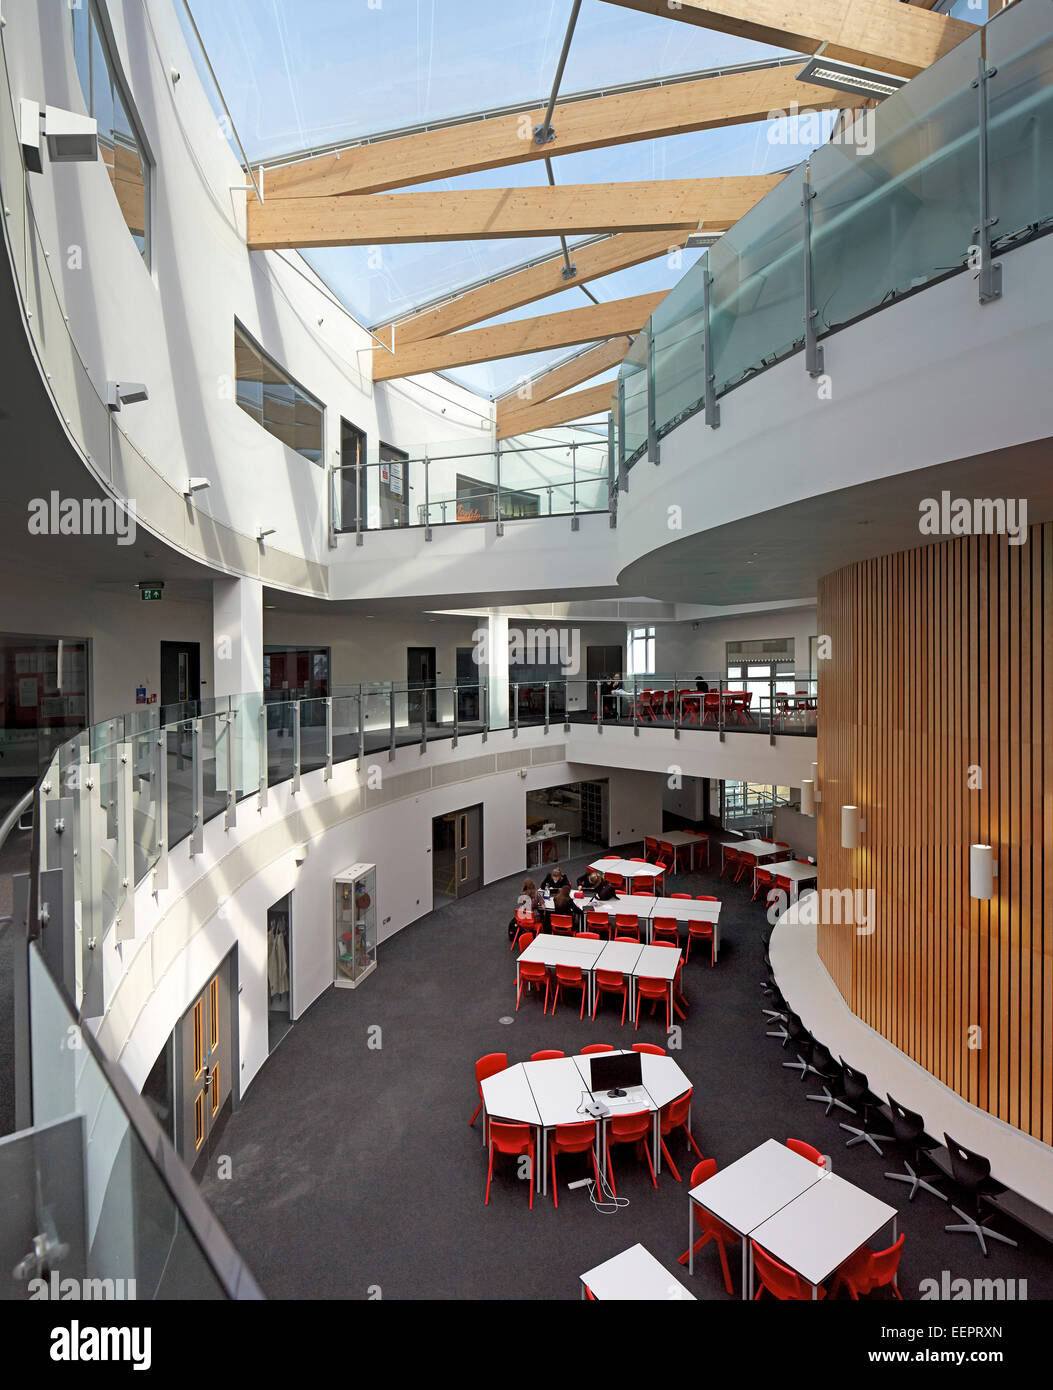 Skinners Academy, Kent, Royal Tunbridge Wells, Royaume-Uni. Architecte : sud architectes, 2014 chasseurs. Vue globale sur le milieu Banque D'Images